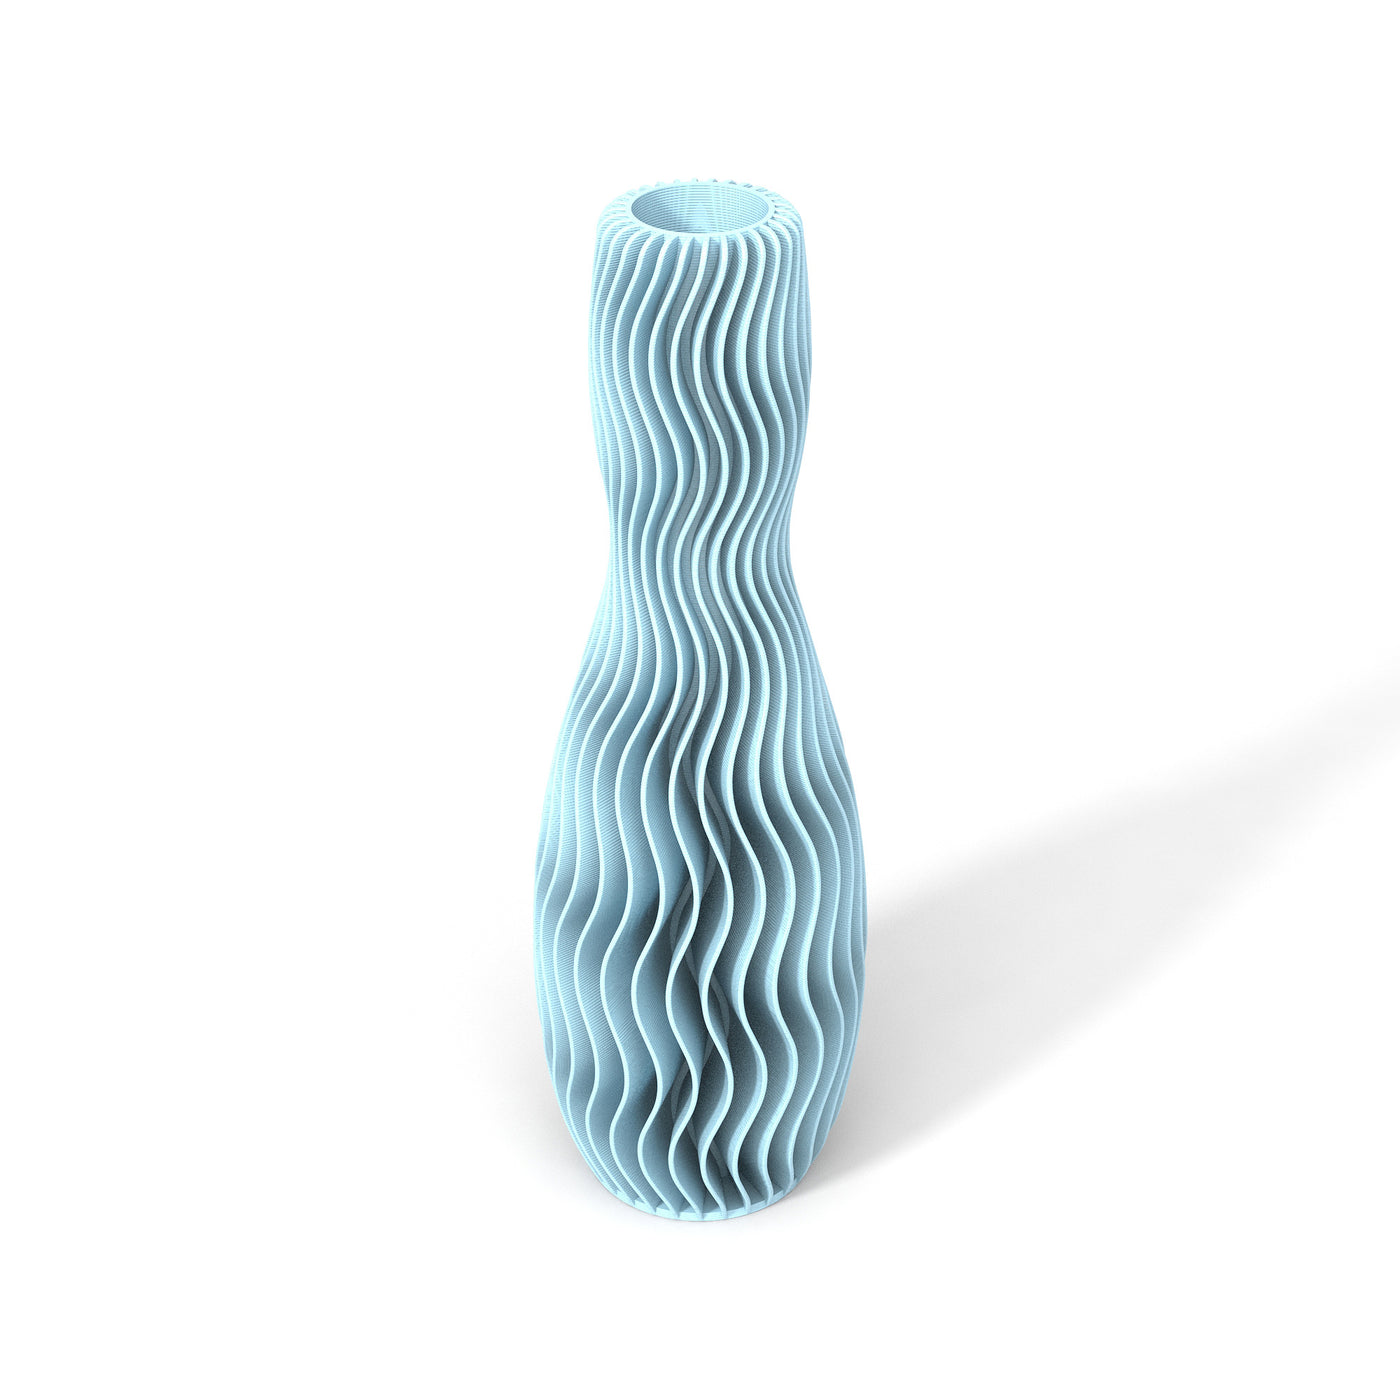 Světle modrá designová váza 3D print WAVE 4